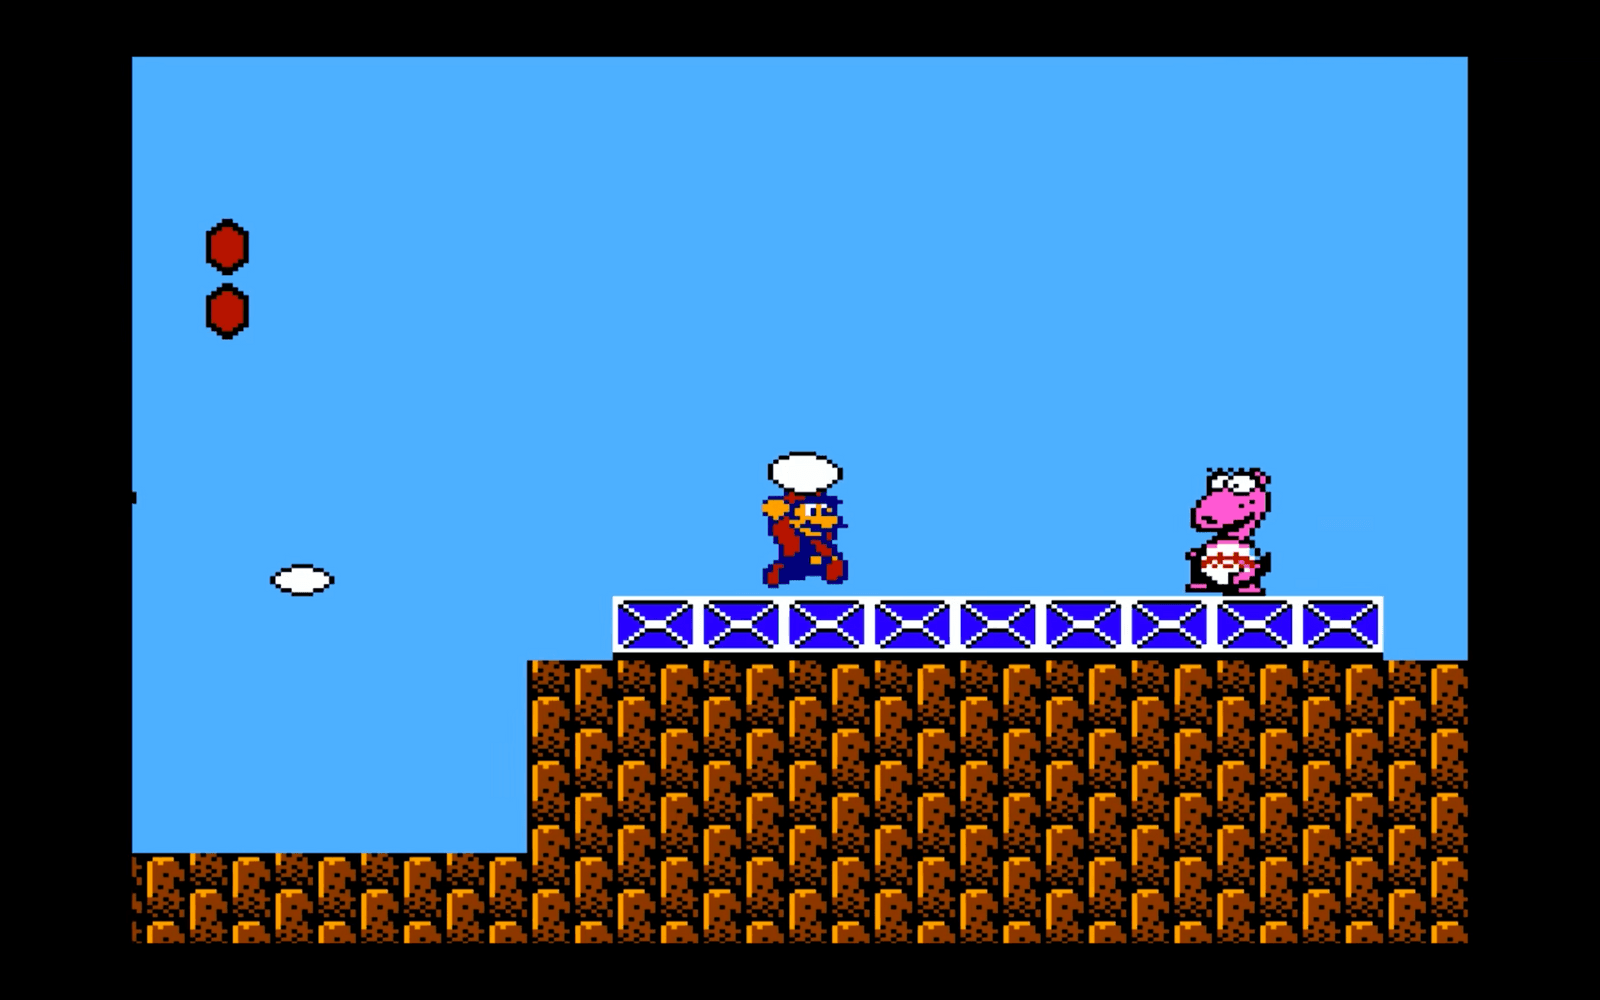 1988 släpptes Super Mario Bros 2 i USA och ett år senare i Europa. Vad få kände till då var att ett Super Mario 2 hade släppts i Japan fler år tidigare men ratades av USA och Europa eftersom det ansågs vara för likt det första spelet. Dessutom var det för svårt. För att lösa problemet tog Nintendo ett redan befintligt spel, Yume Kōjō: Doki Doki Panic, och placerade in de välbekanta Mario-figurerna. Det ursprungliga Super Mario 2 släpptes några år senare med tillägget "The Lost Levels".